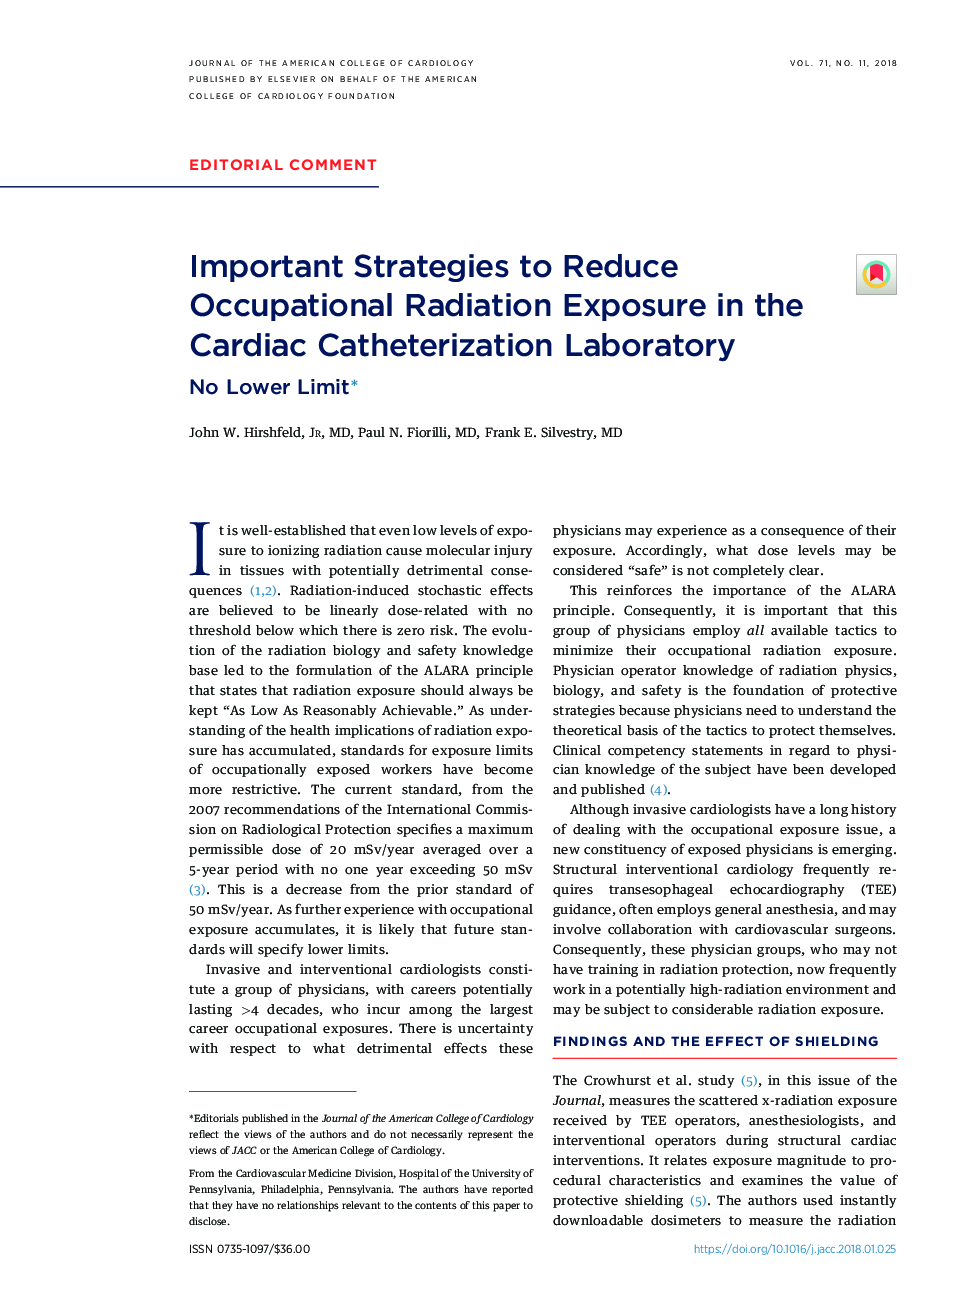 راهکارهای مهمی برای کاهش تابش شغلی در آزمایشگاه کاتتریت قلب 